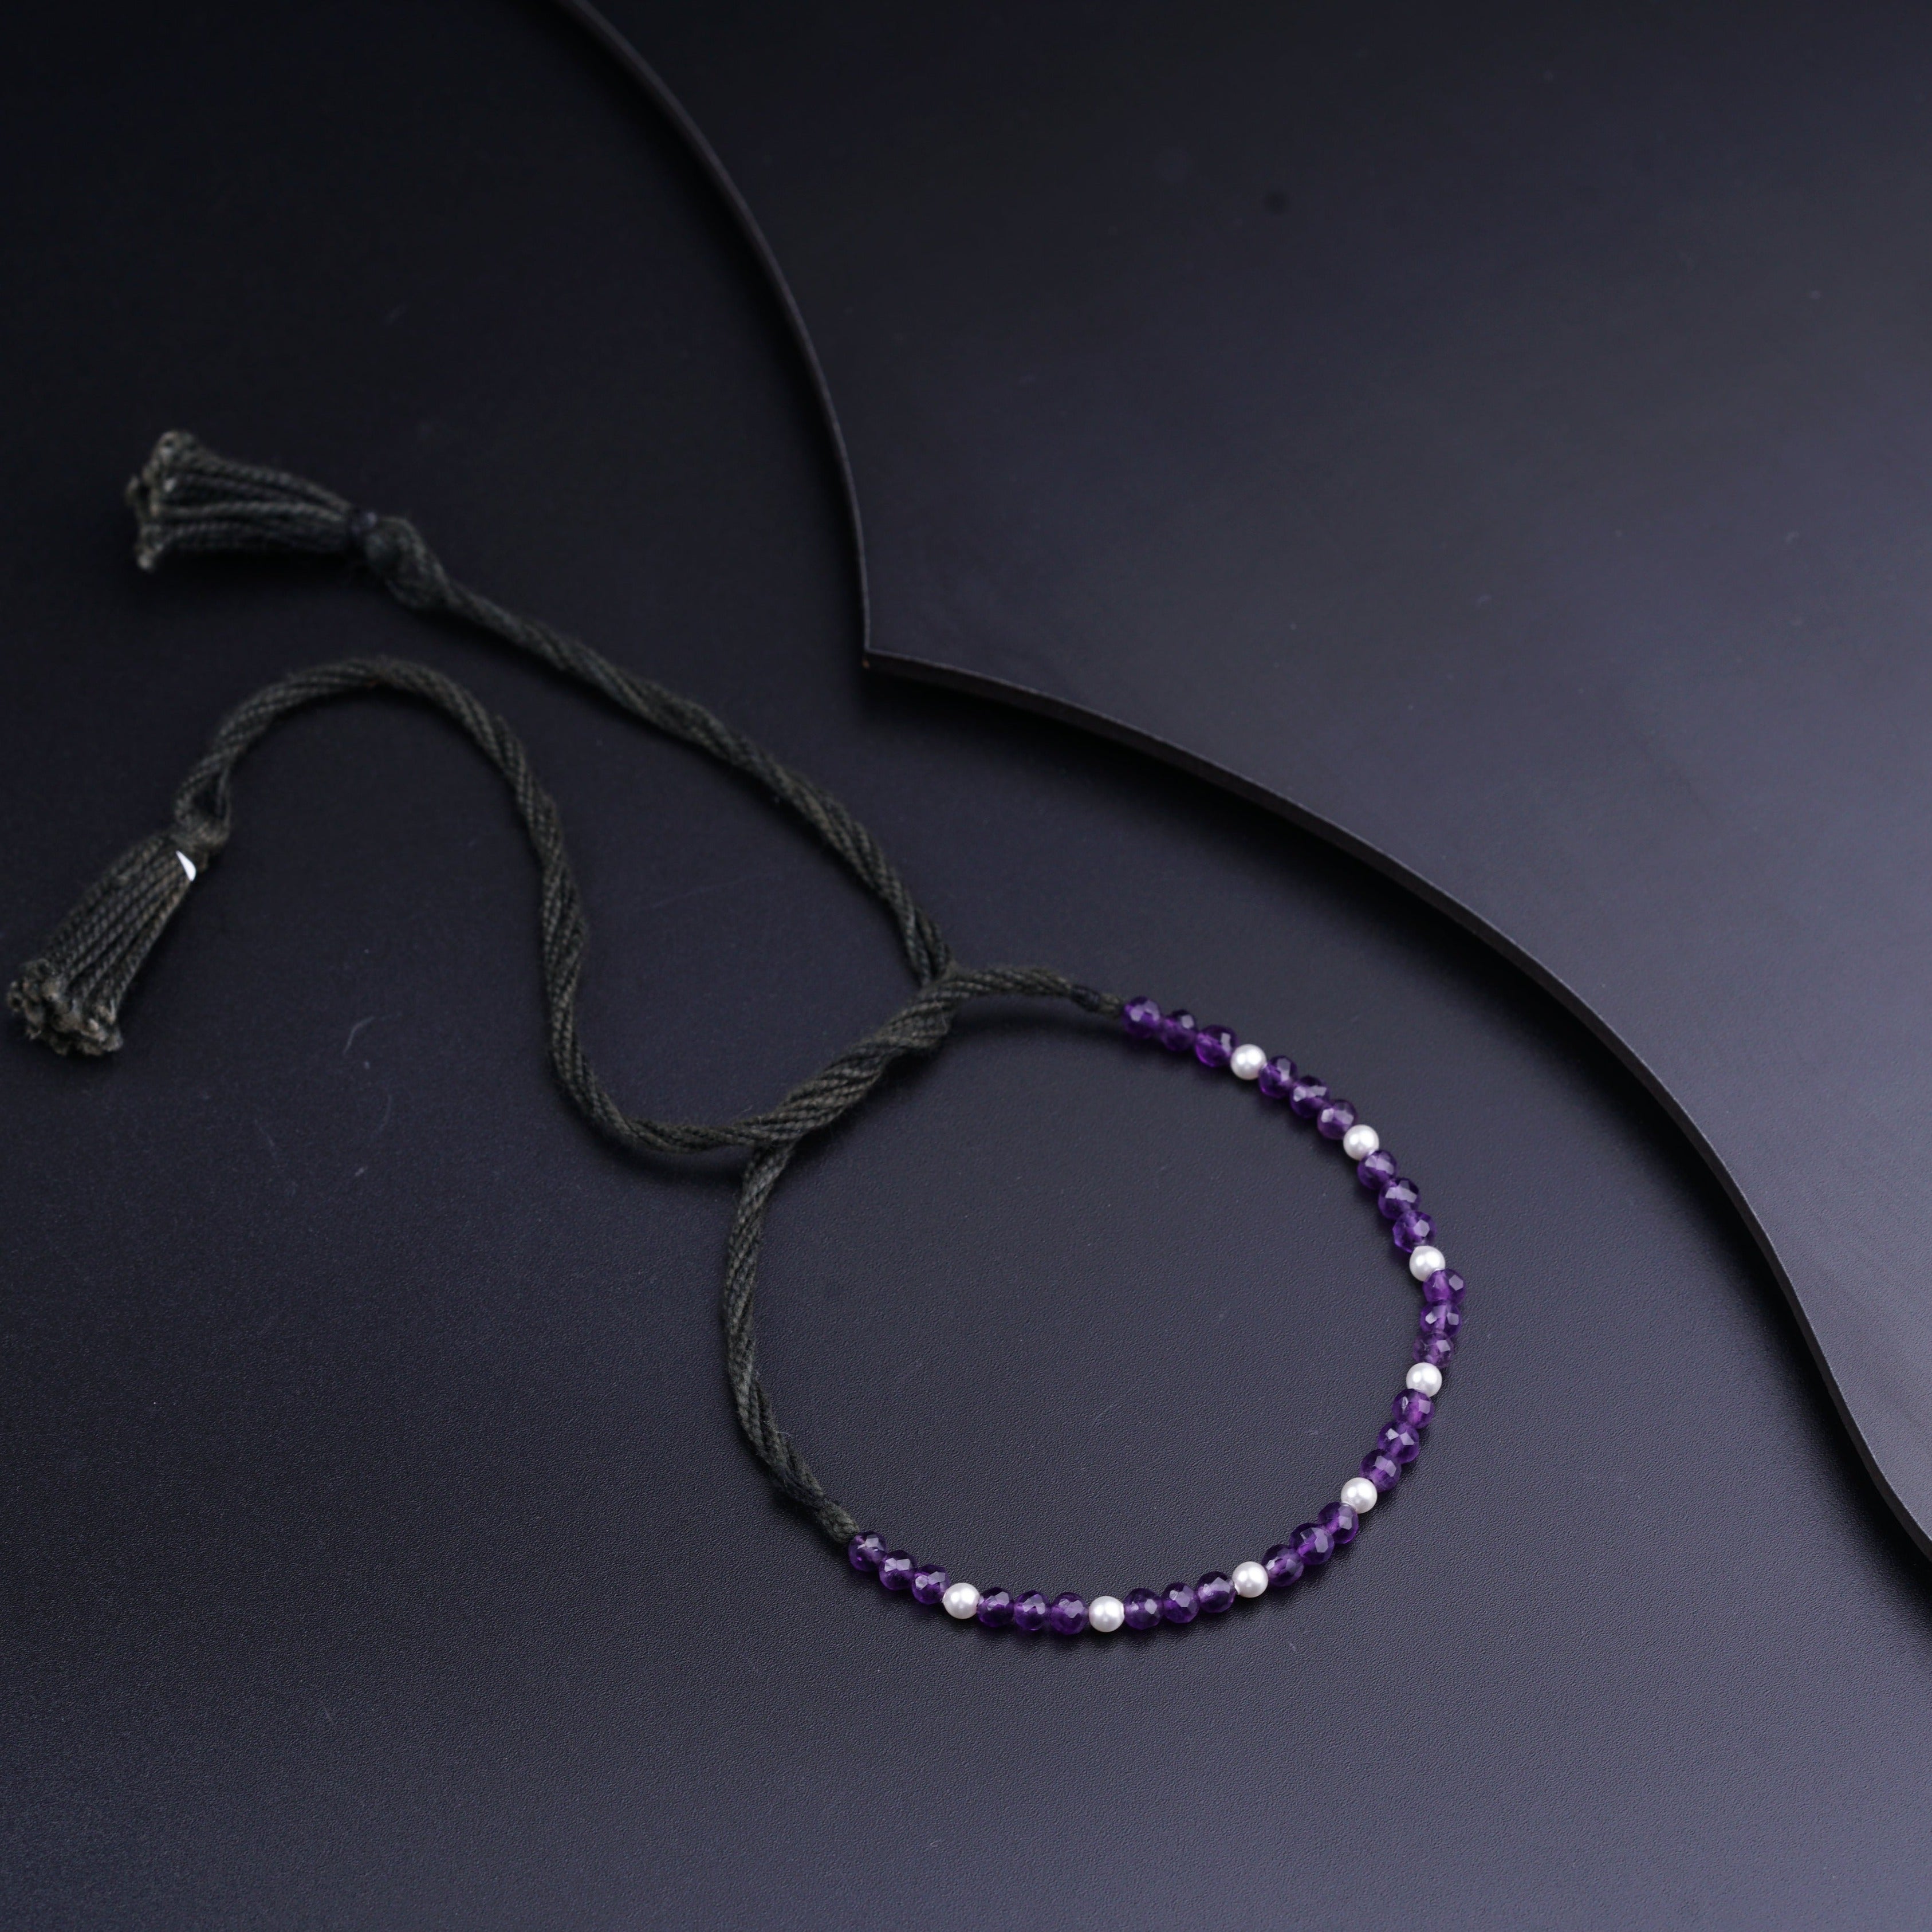 a purple beaded bracelet with a tassel